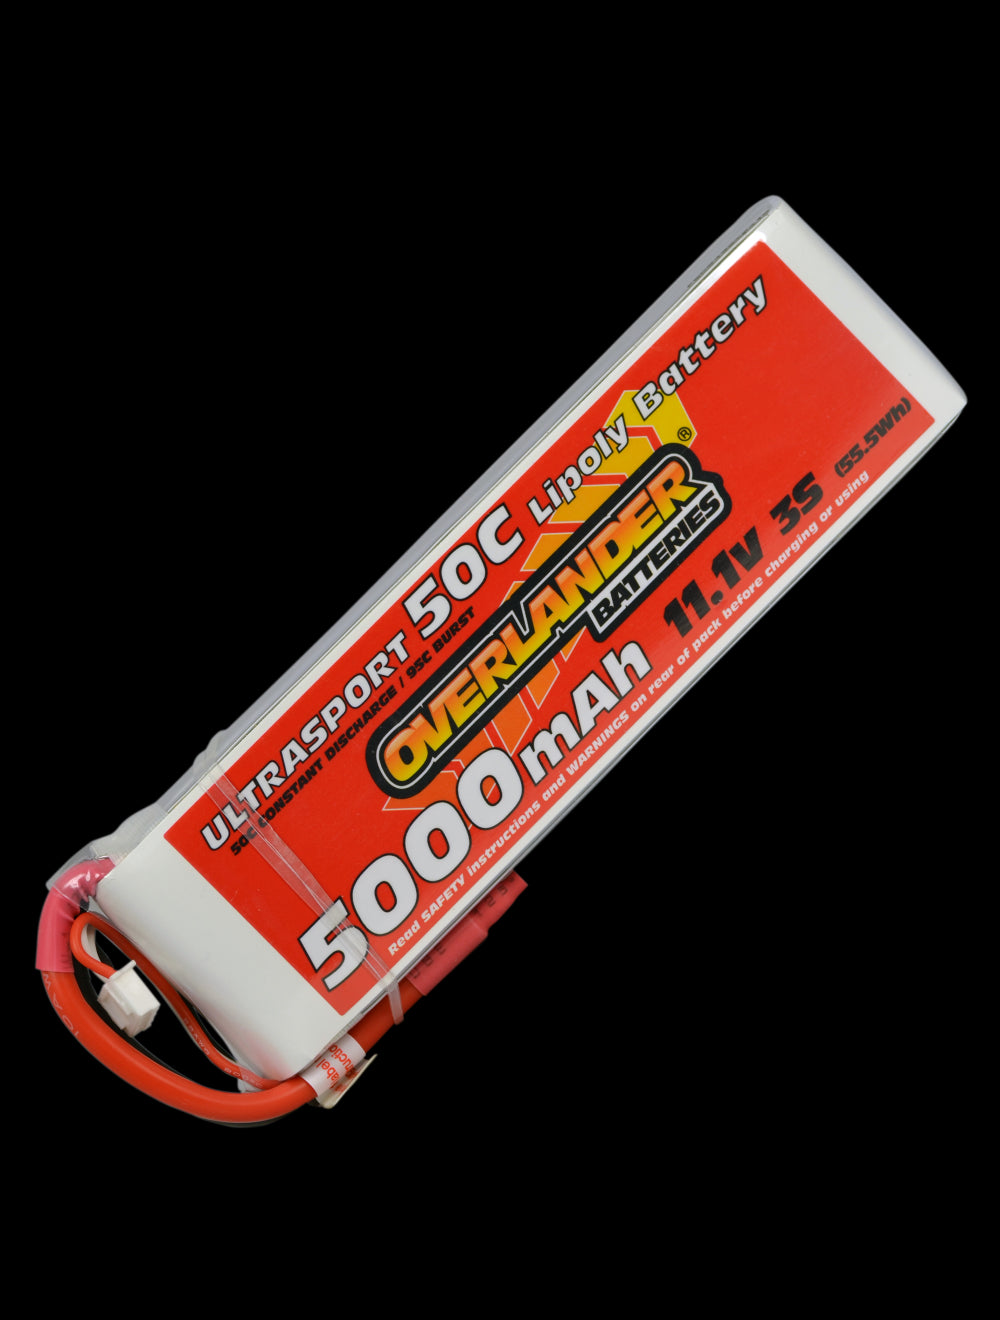 Overlander 5000mAh 11.1V 3S 50C Ultrasport LiPo Battery - XT90 Connector 2631